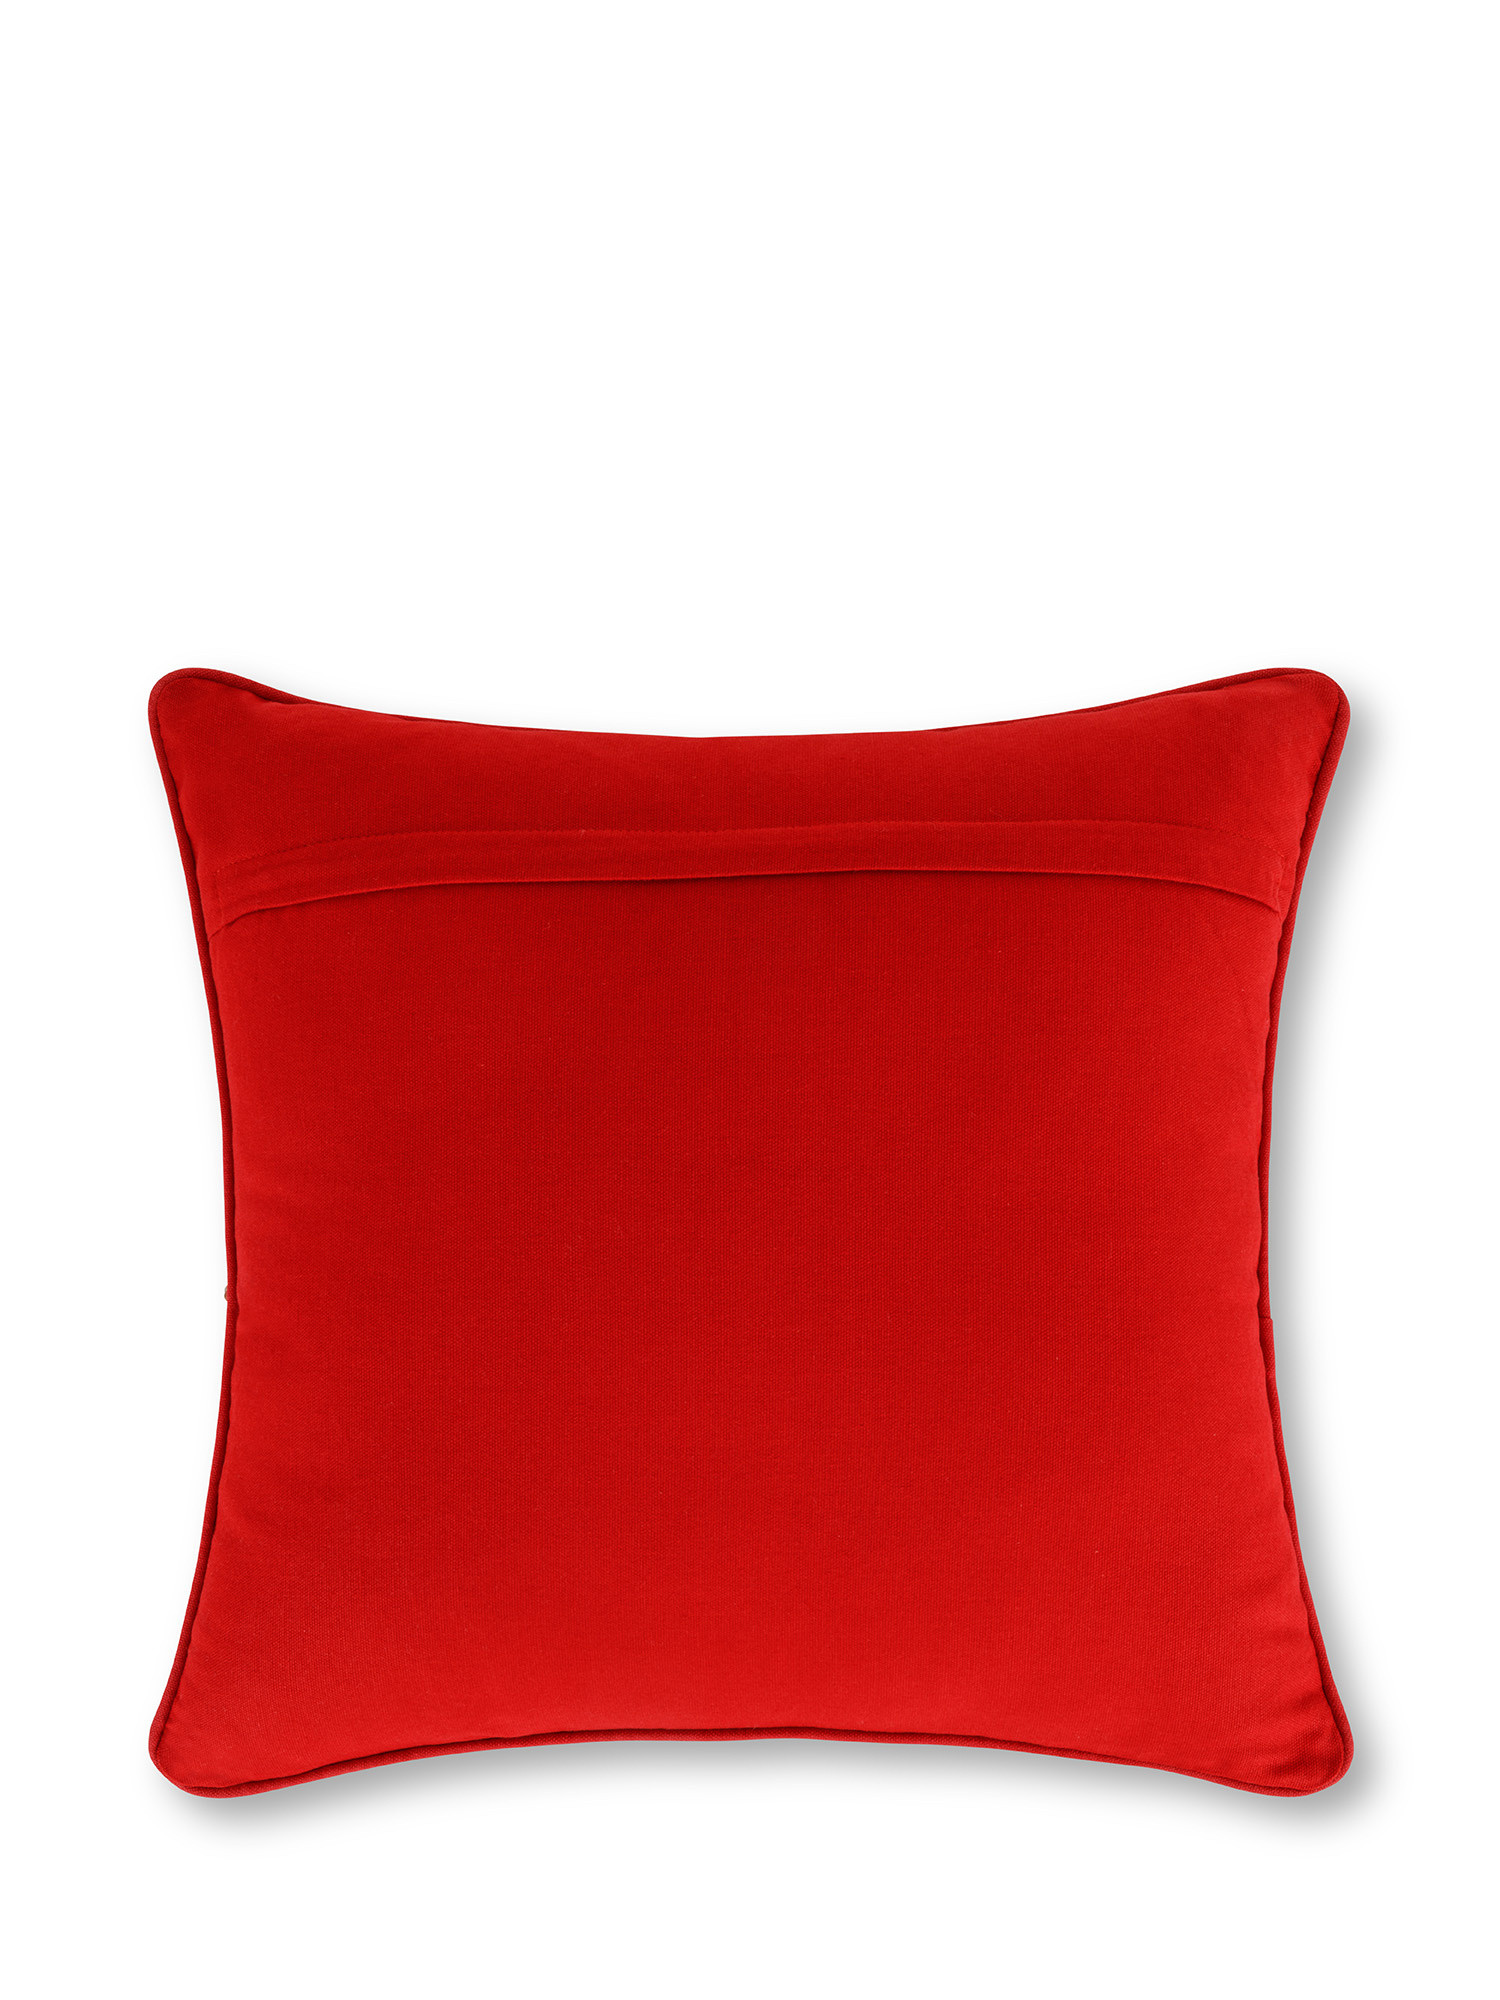 Cuscino in velluto con ricamo fuochi d'artificio in rilievo 45x45 cm, Rosso, large image number 1